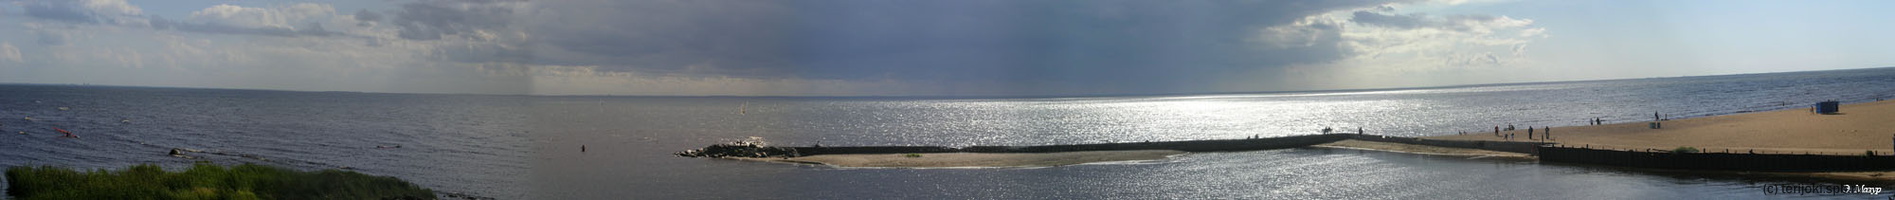 10. Вид на бухту с маяка перед дождем.